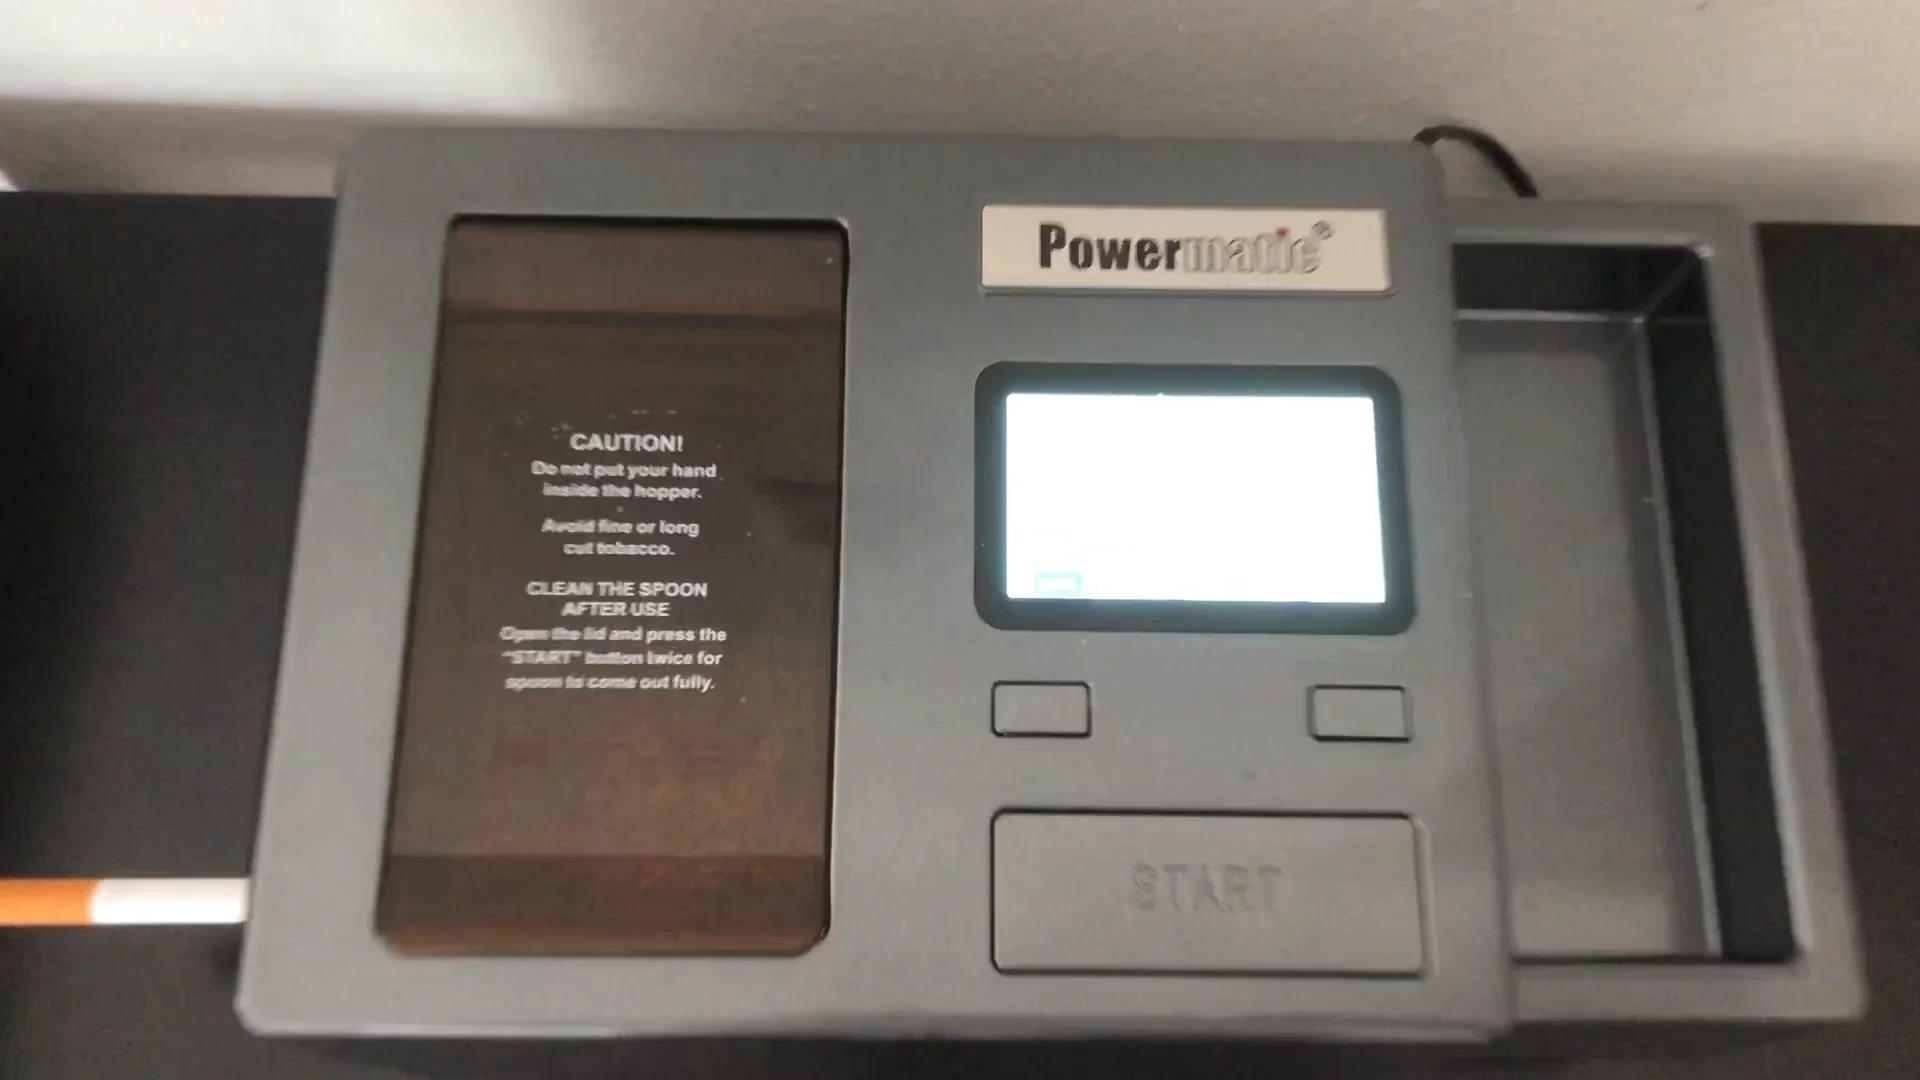 Powermatic 3 Elektrische Stopfmaschine überzeugt on Vimeo